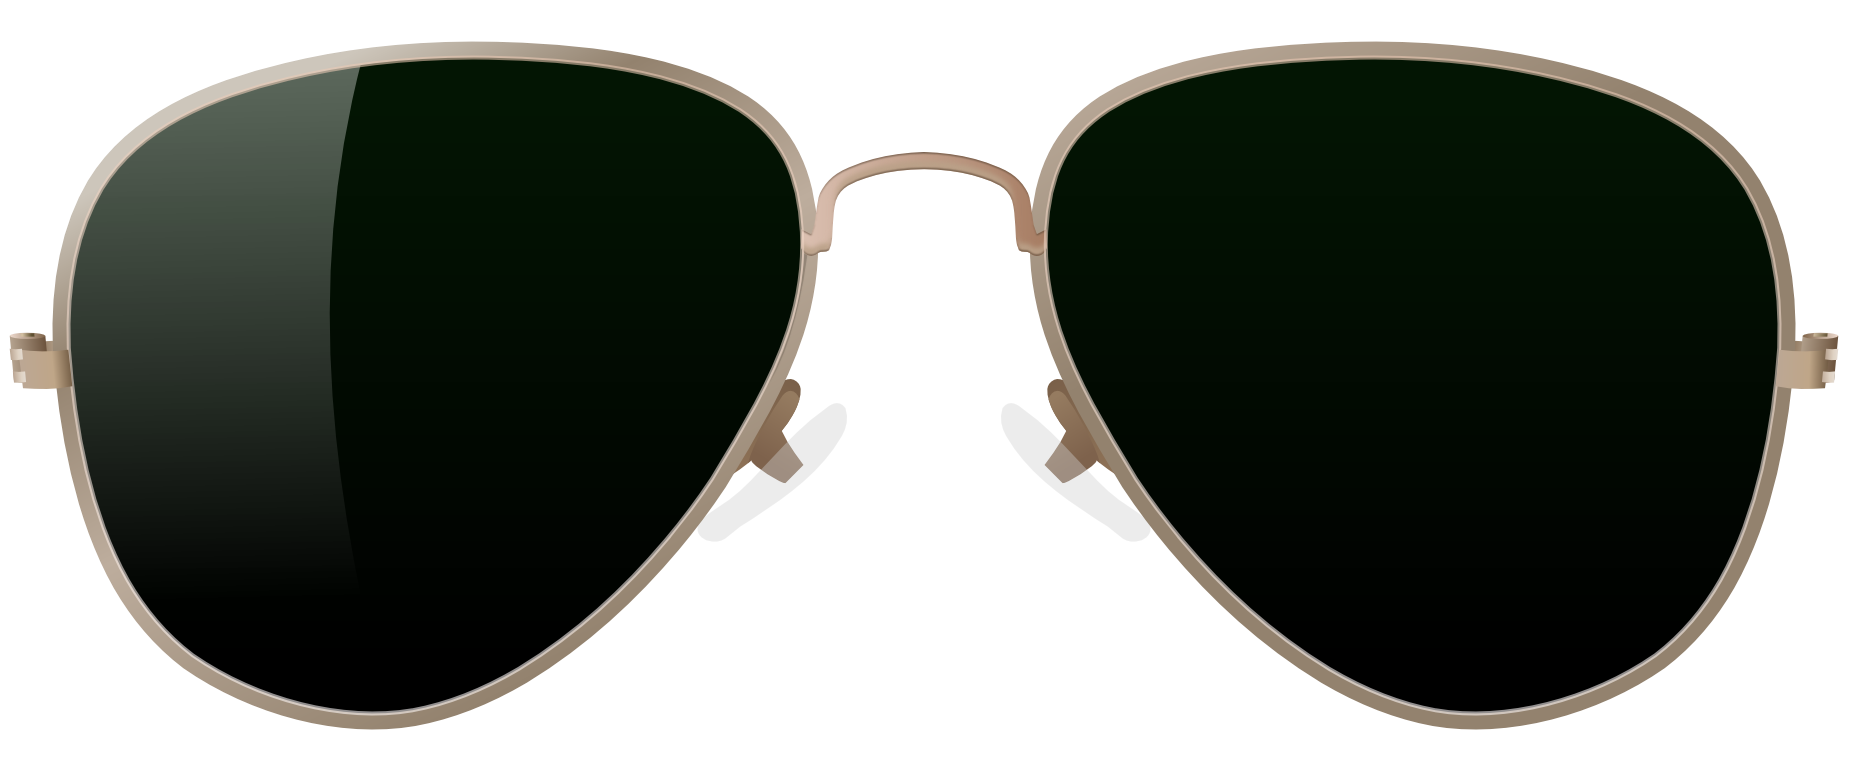 Glasses Clothes Sunglasses Shades Earphones PNG